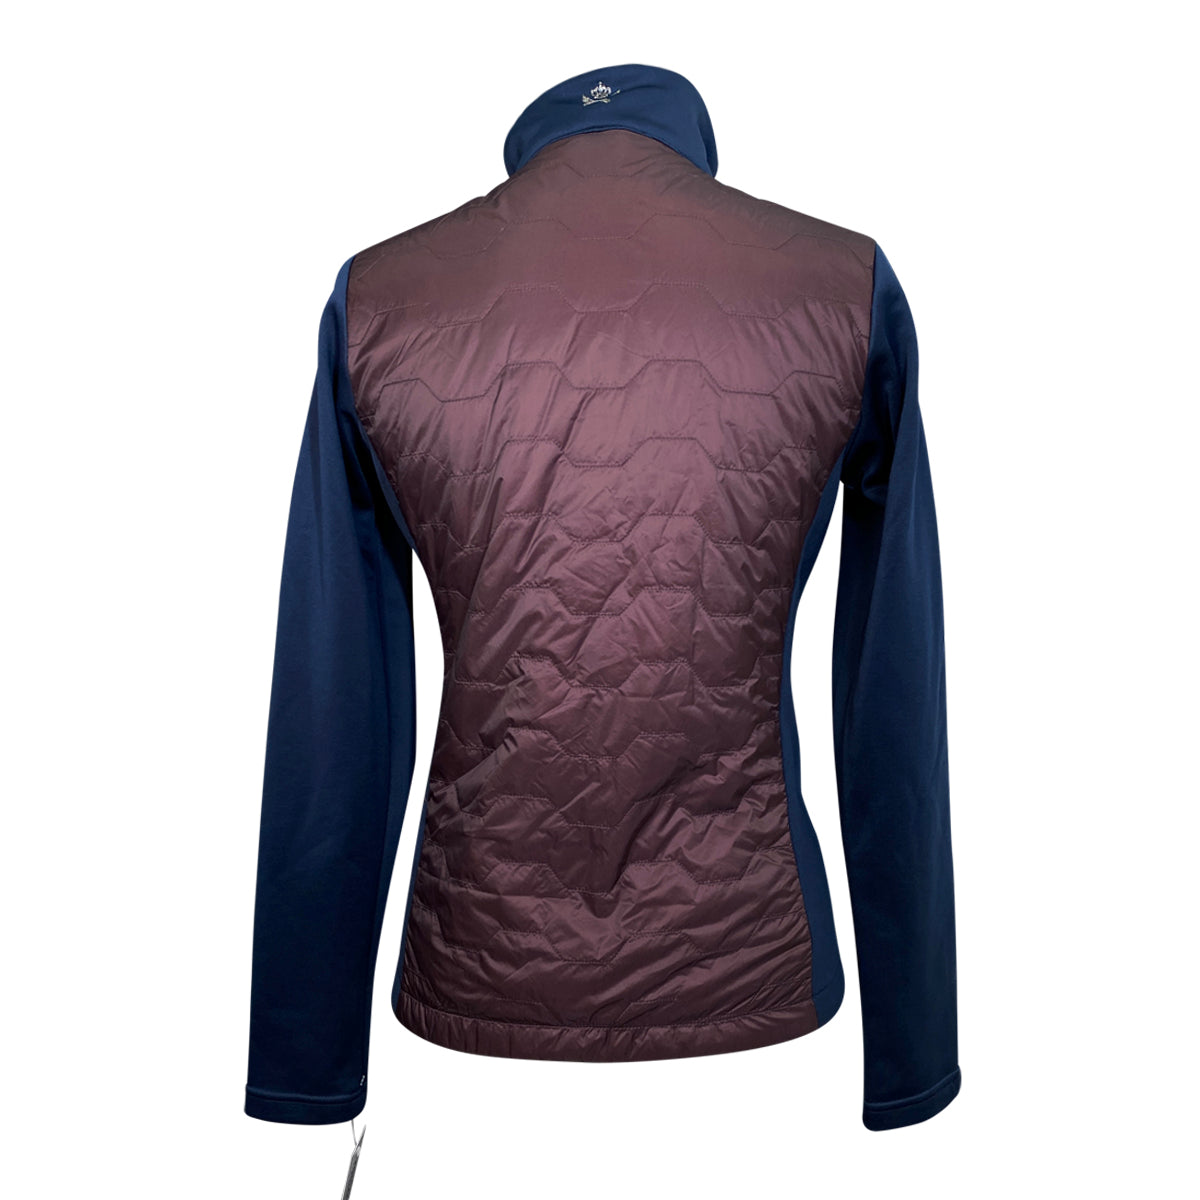 Kingsland 'Skyla' Softshell Jacket in Burgundy/Navy